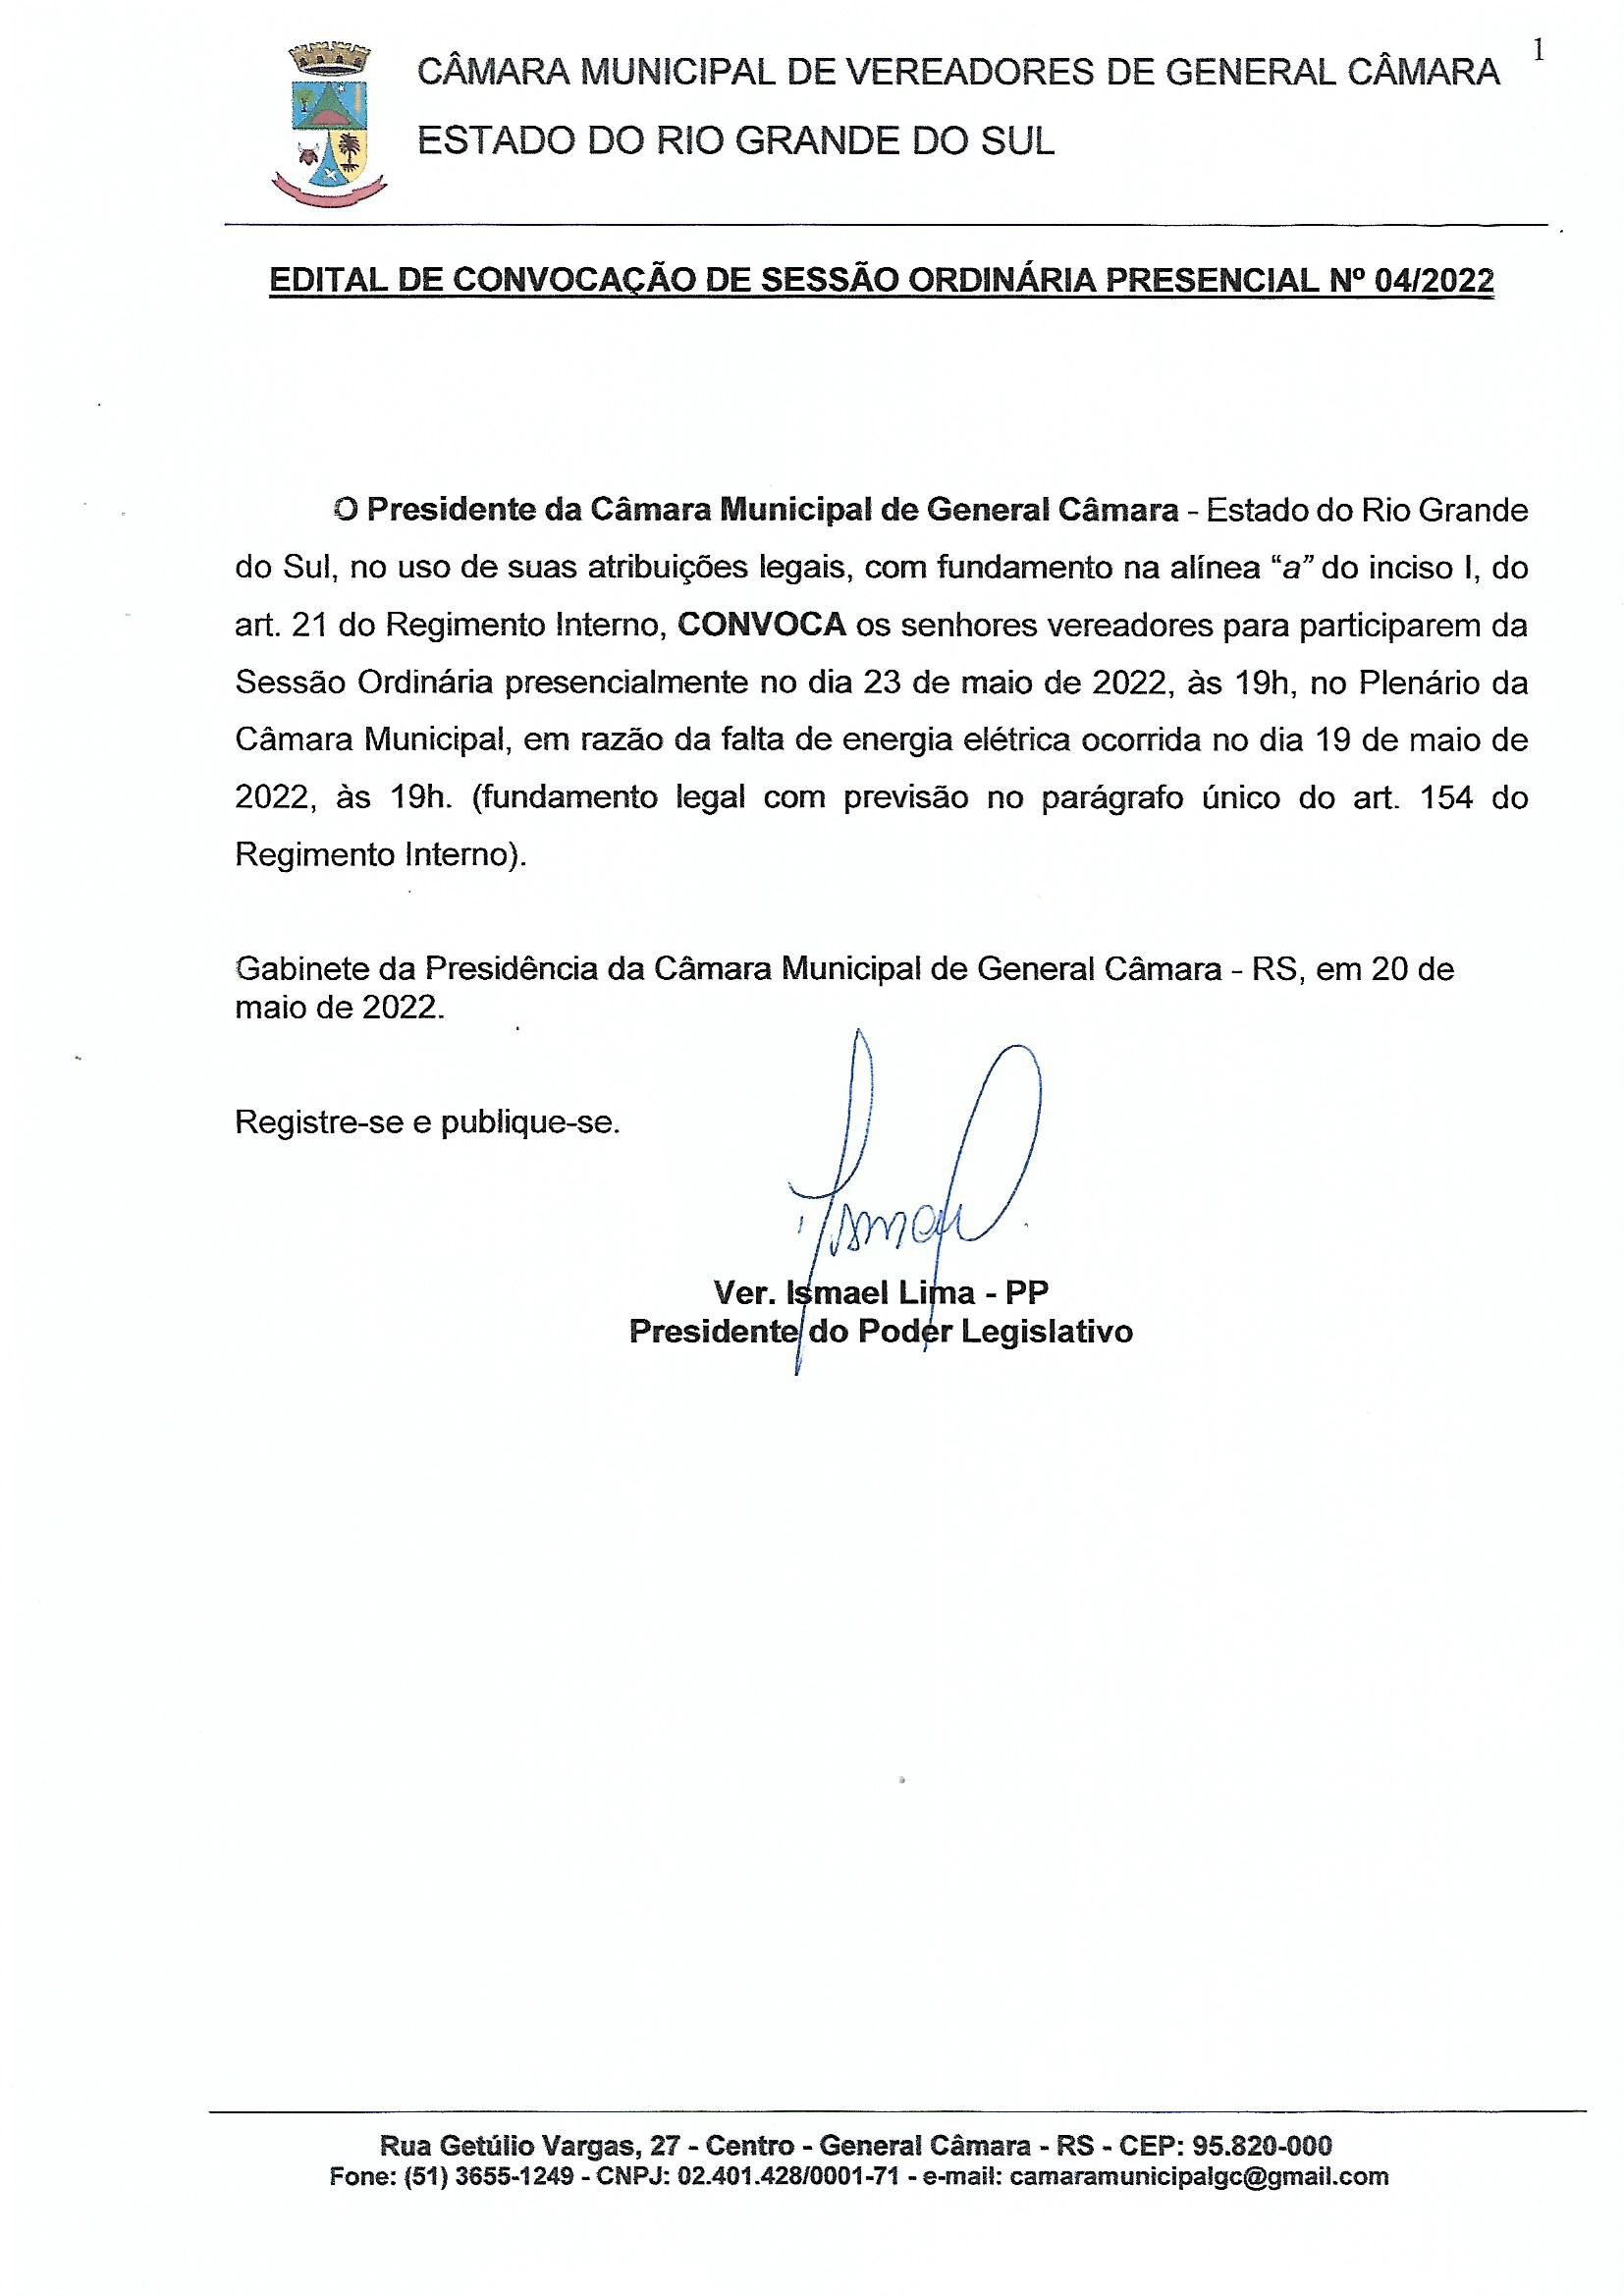 EDITAL DE CONVOCAÇÃO DE SESSÃO ORDINÁRIA PRESENCIAL Nº 004/2022